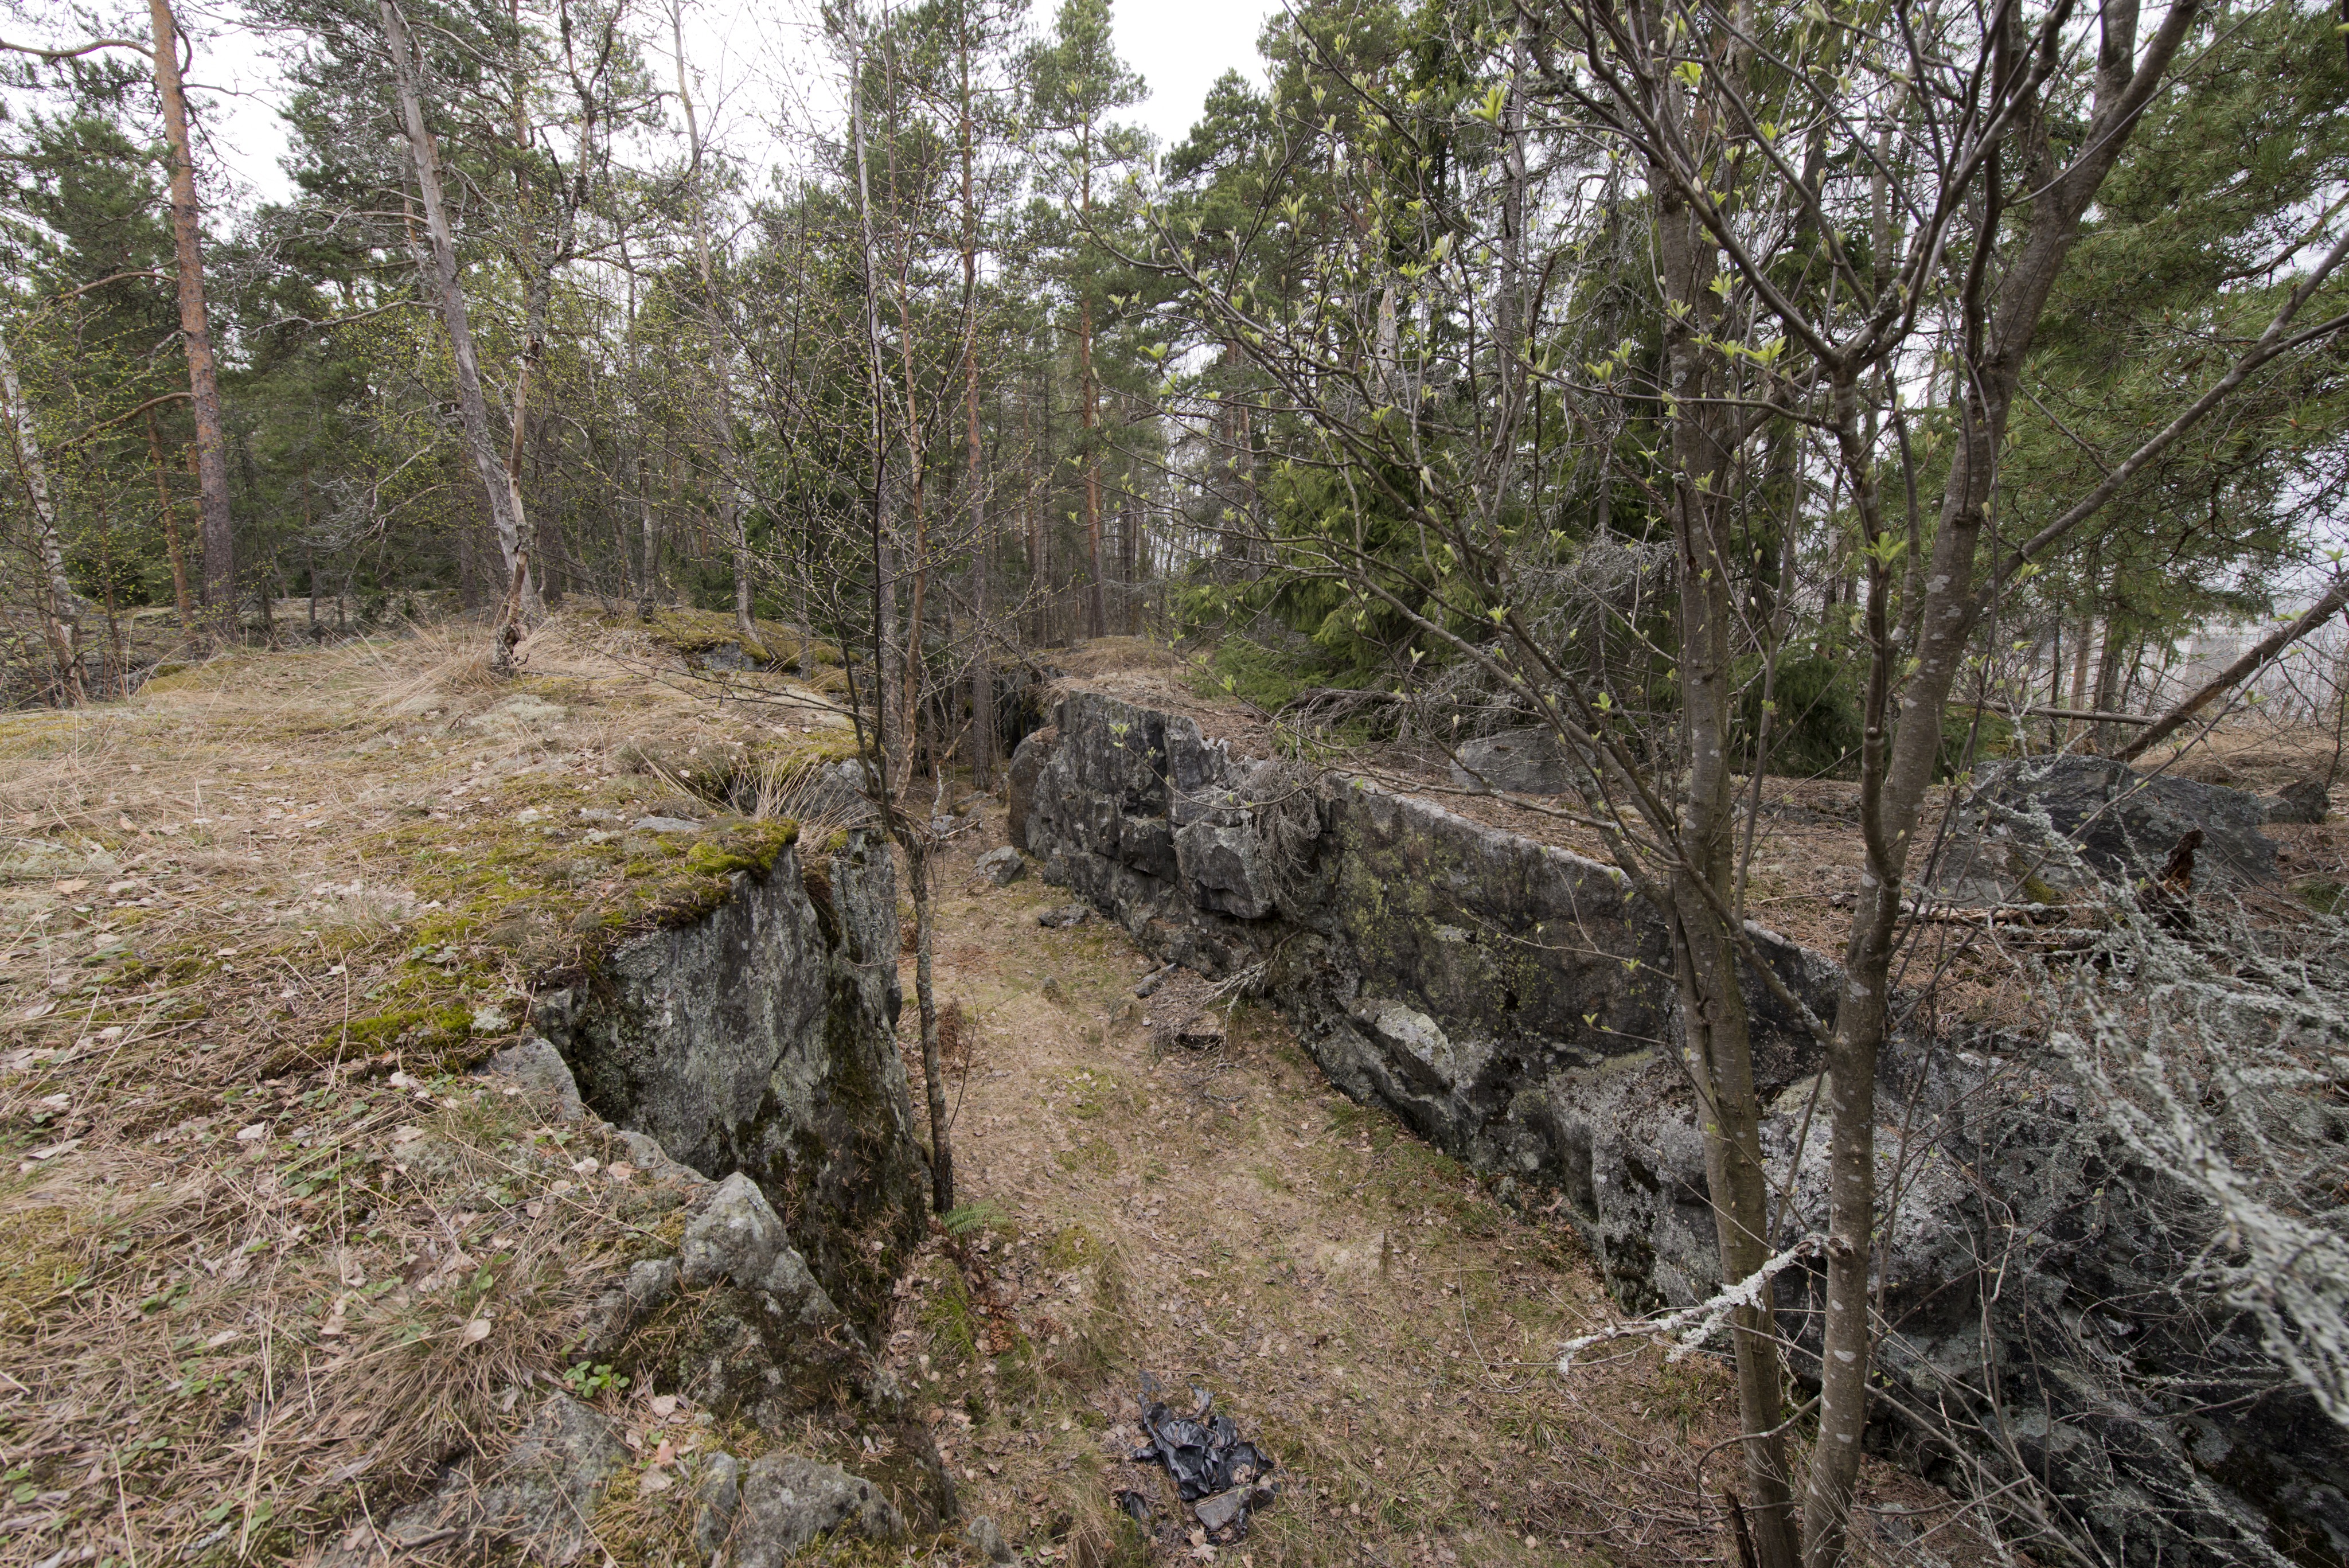 Ruukinranta. Ensimmäisen maailmansodan aikainen maalinnoitus, puolustusasema XXXVI:1 Ruukinrannassa, Espoossa. Kuvassa näkyy aseman XXXVI:1 itäosaan kuuluvaa, kallioon louhittua yhdyshautaa. Seinämät ovat jyrkät. Oikealla puiden lomasta erottuu rakennuksia. Kuvaussuuntana mahdollisesti luode.